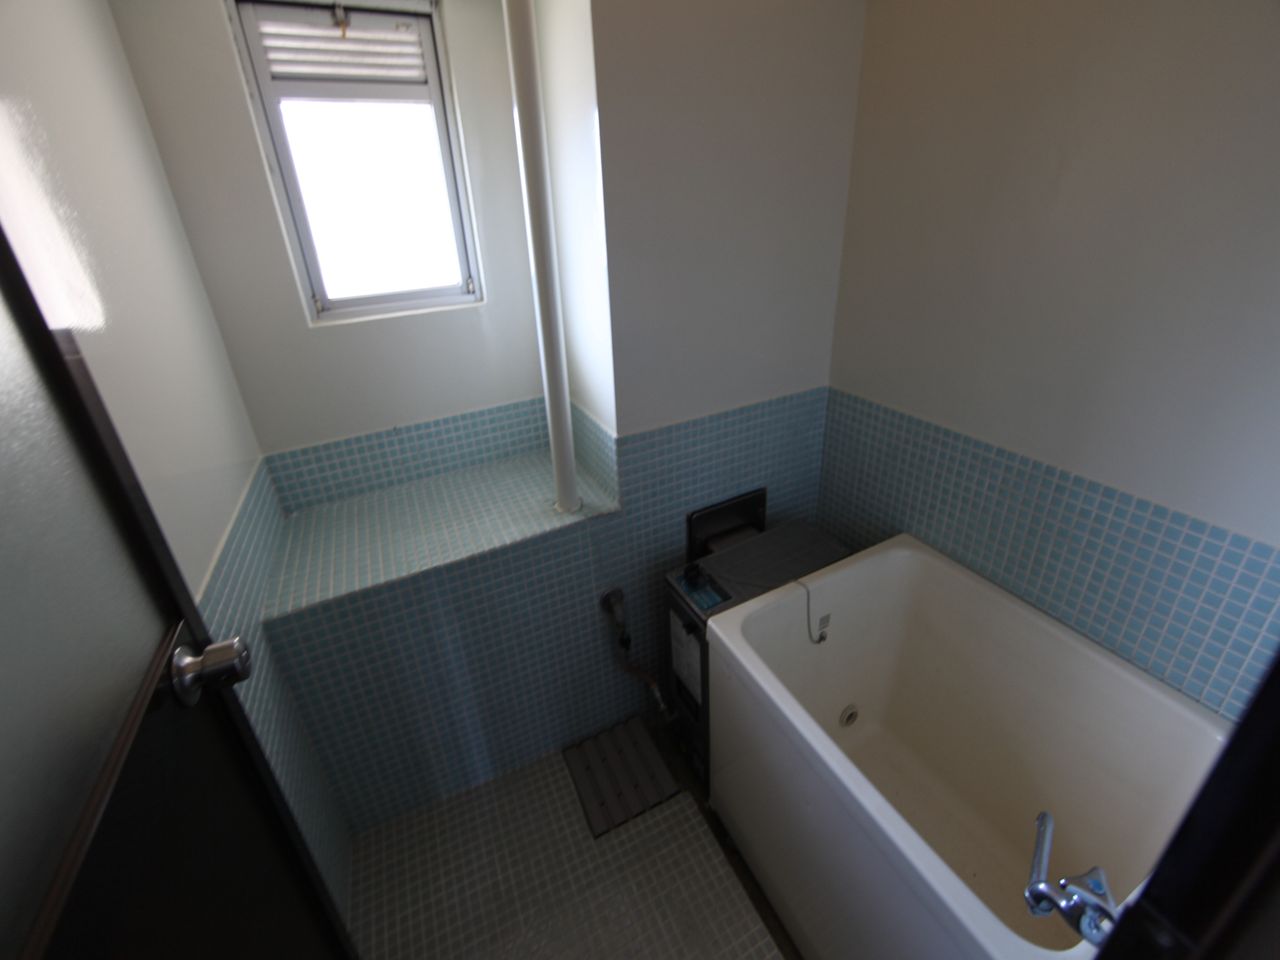 Bath. Bathroom Bathing Restroom With windows (ventilation good)